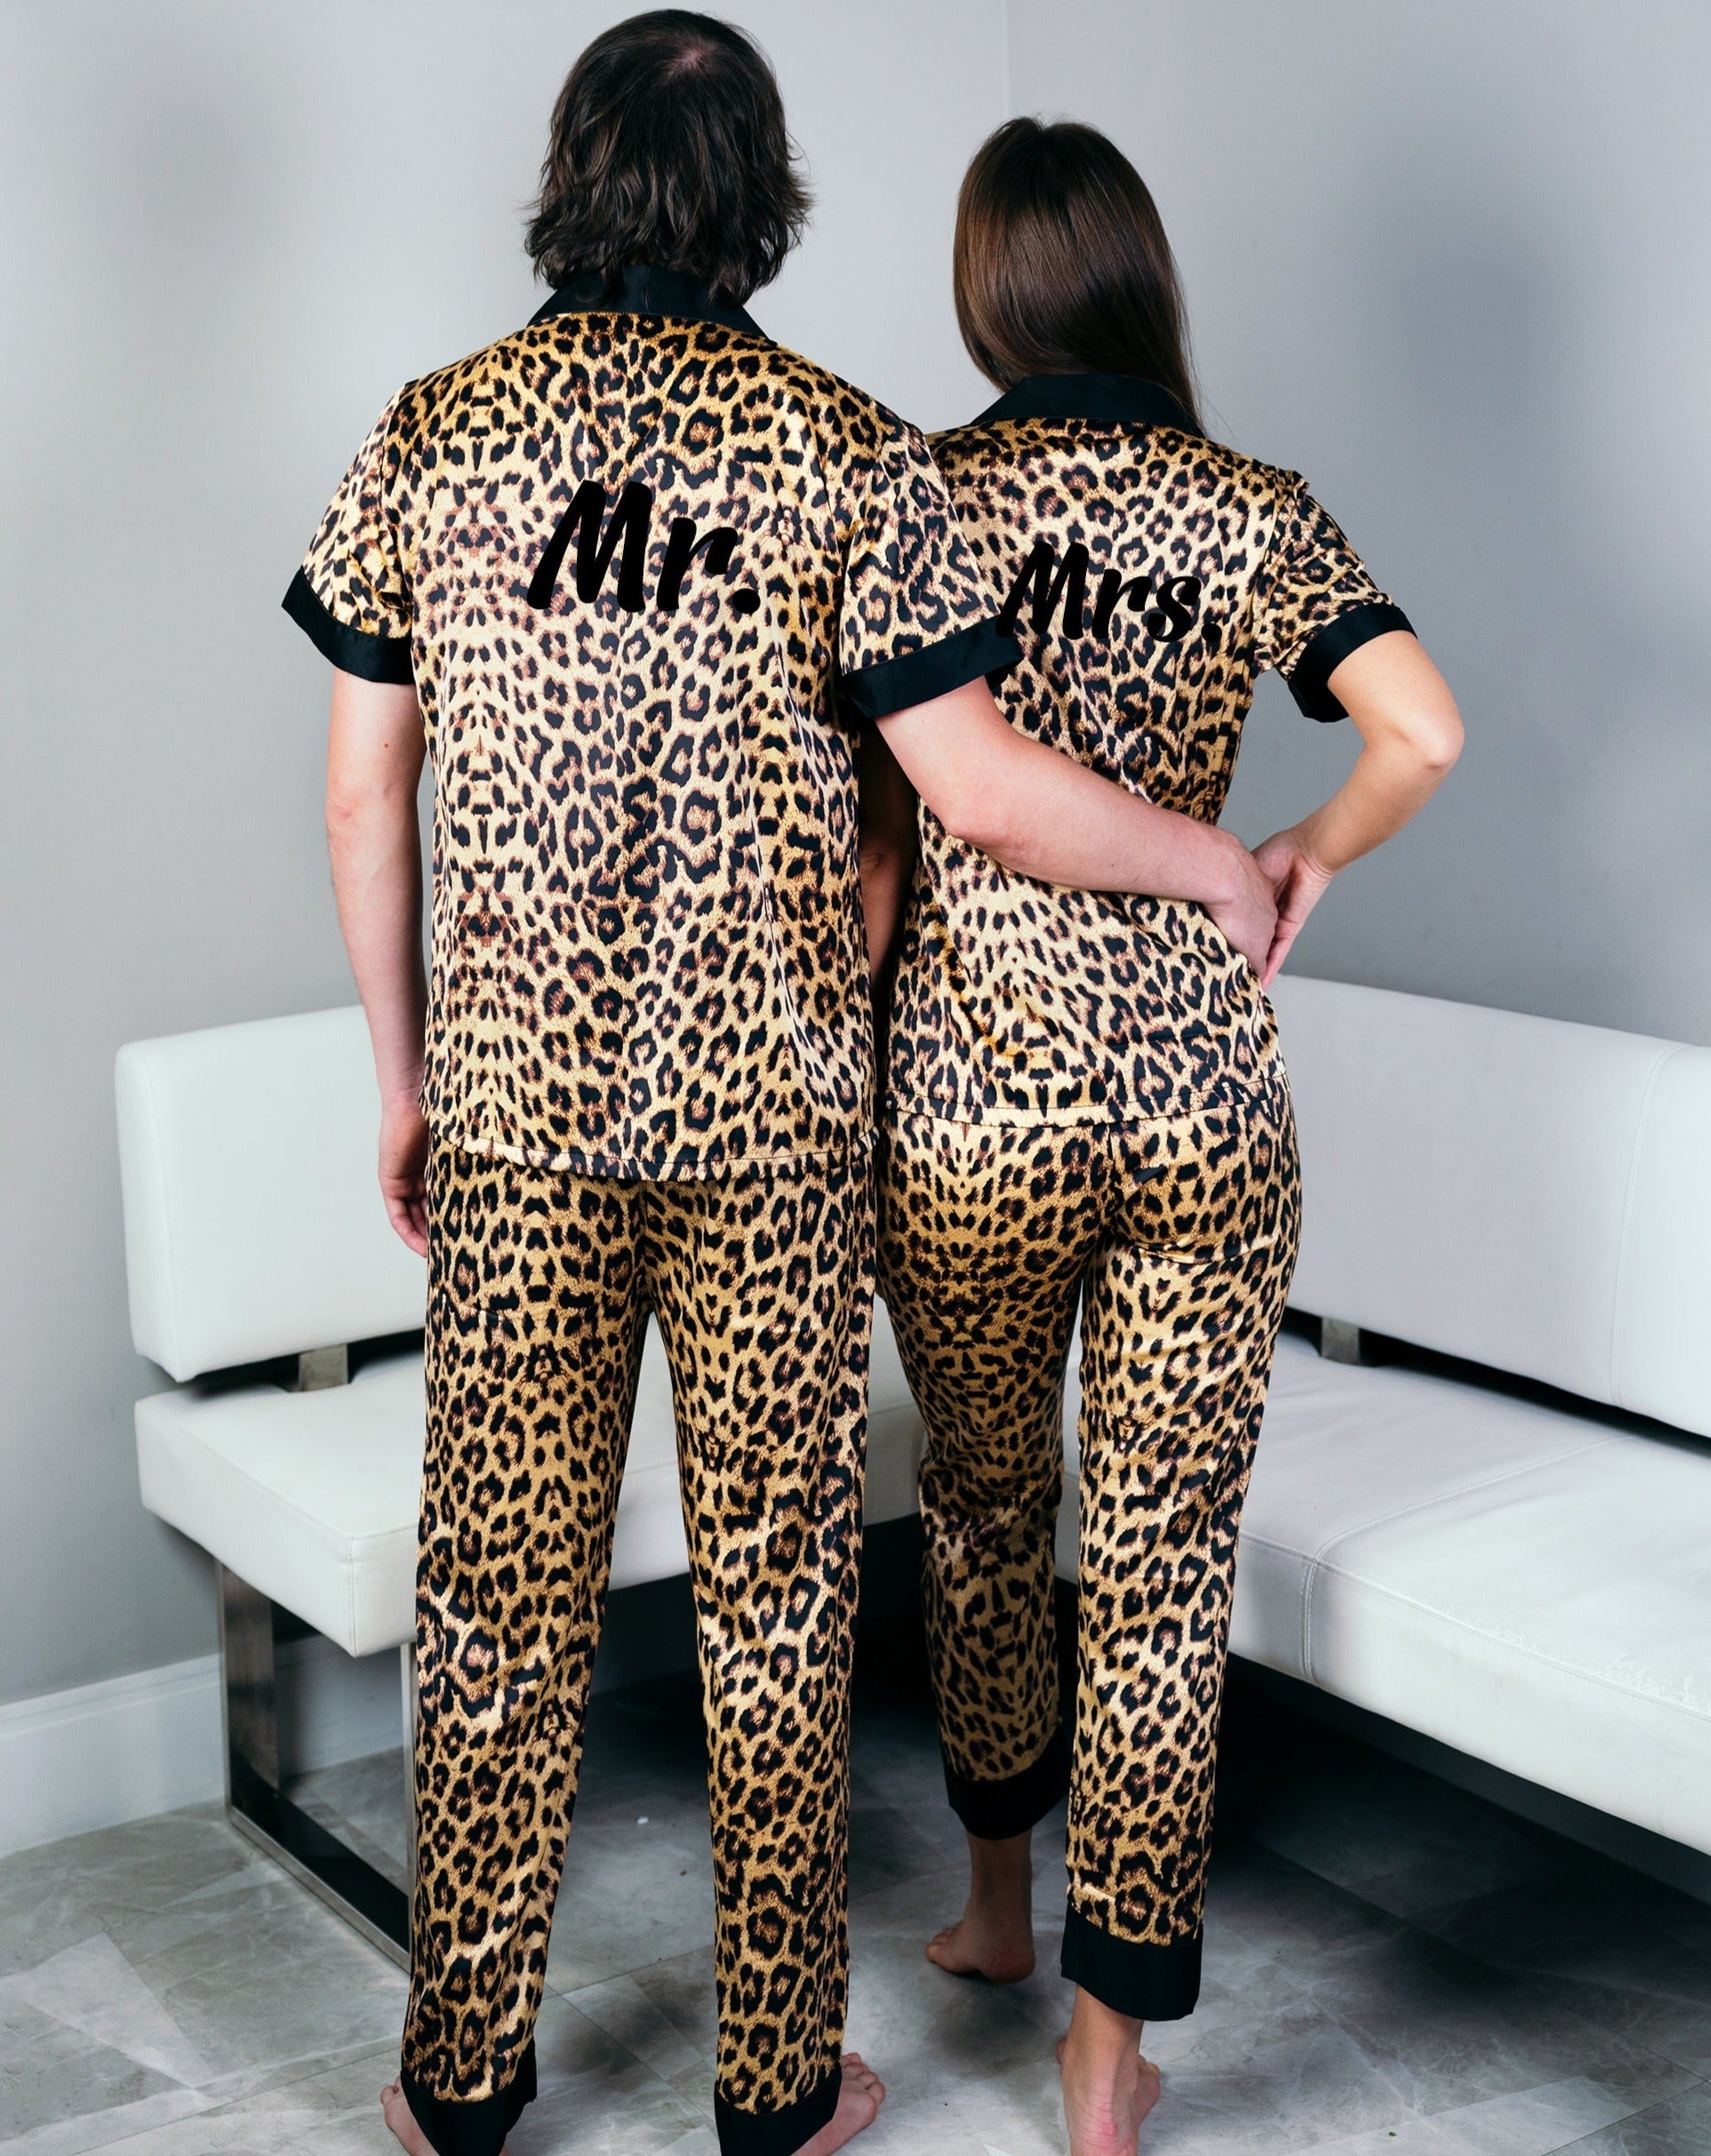 Xmas Pjs, gift Pajamas Satin Couple, Miami for Boutique Sunny Gifts Gift, Wedding Pajamas – Pajamas Leopard Honeymoon Set Anniversary Custom